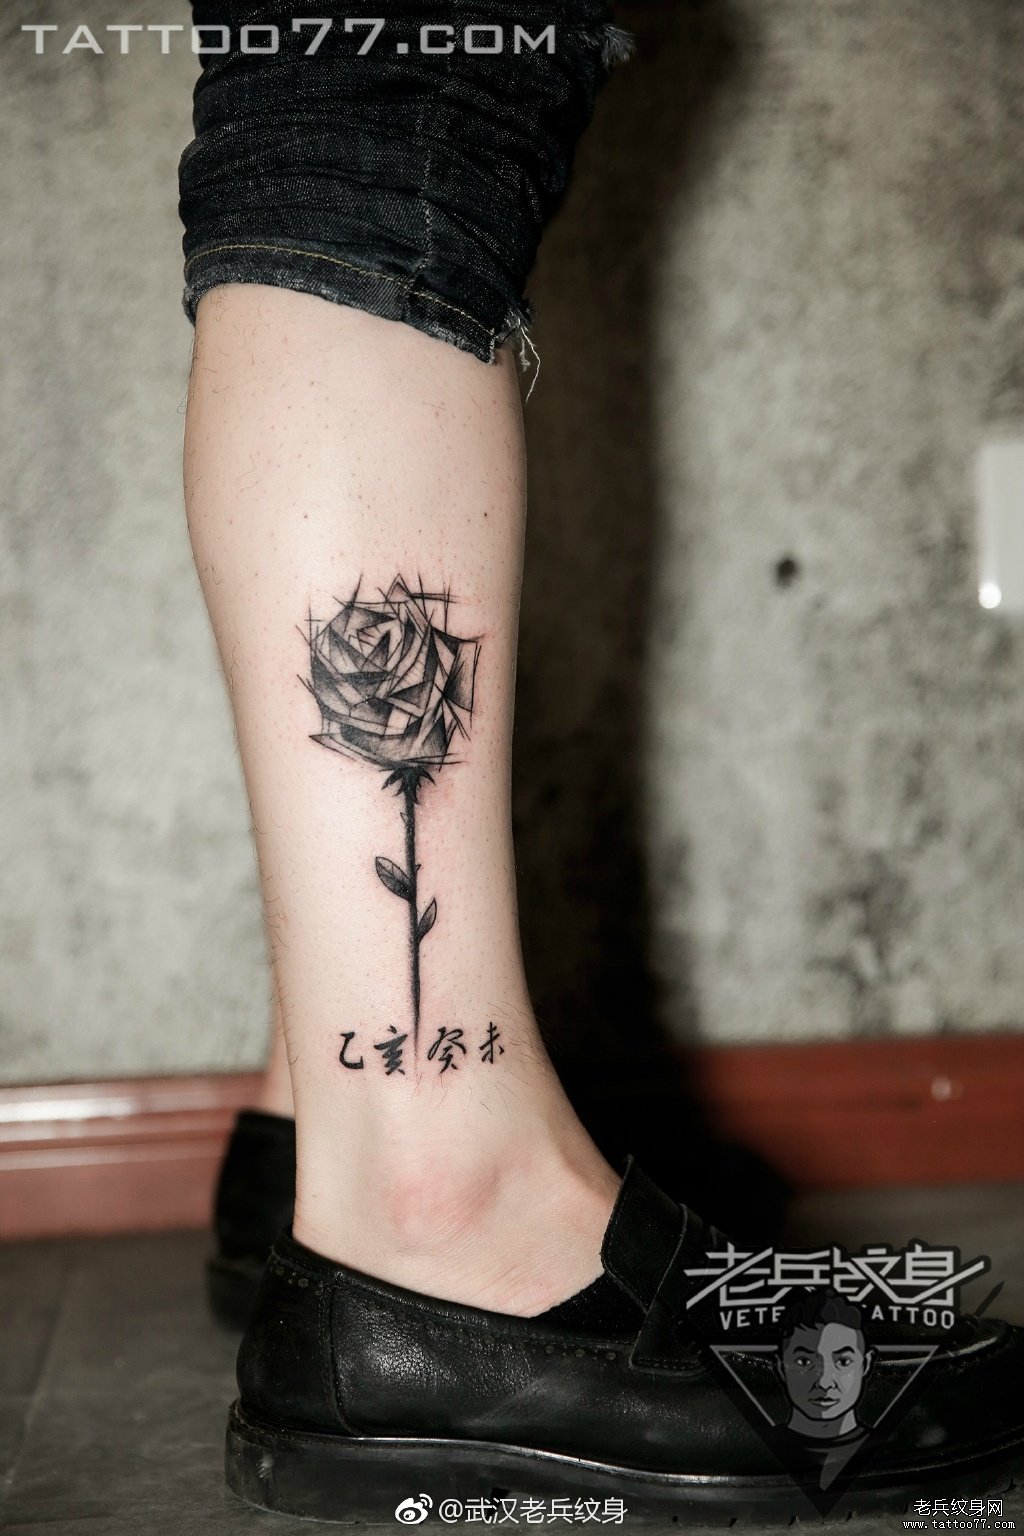 小腿黑灰素描玫瑰花纹身图案作品